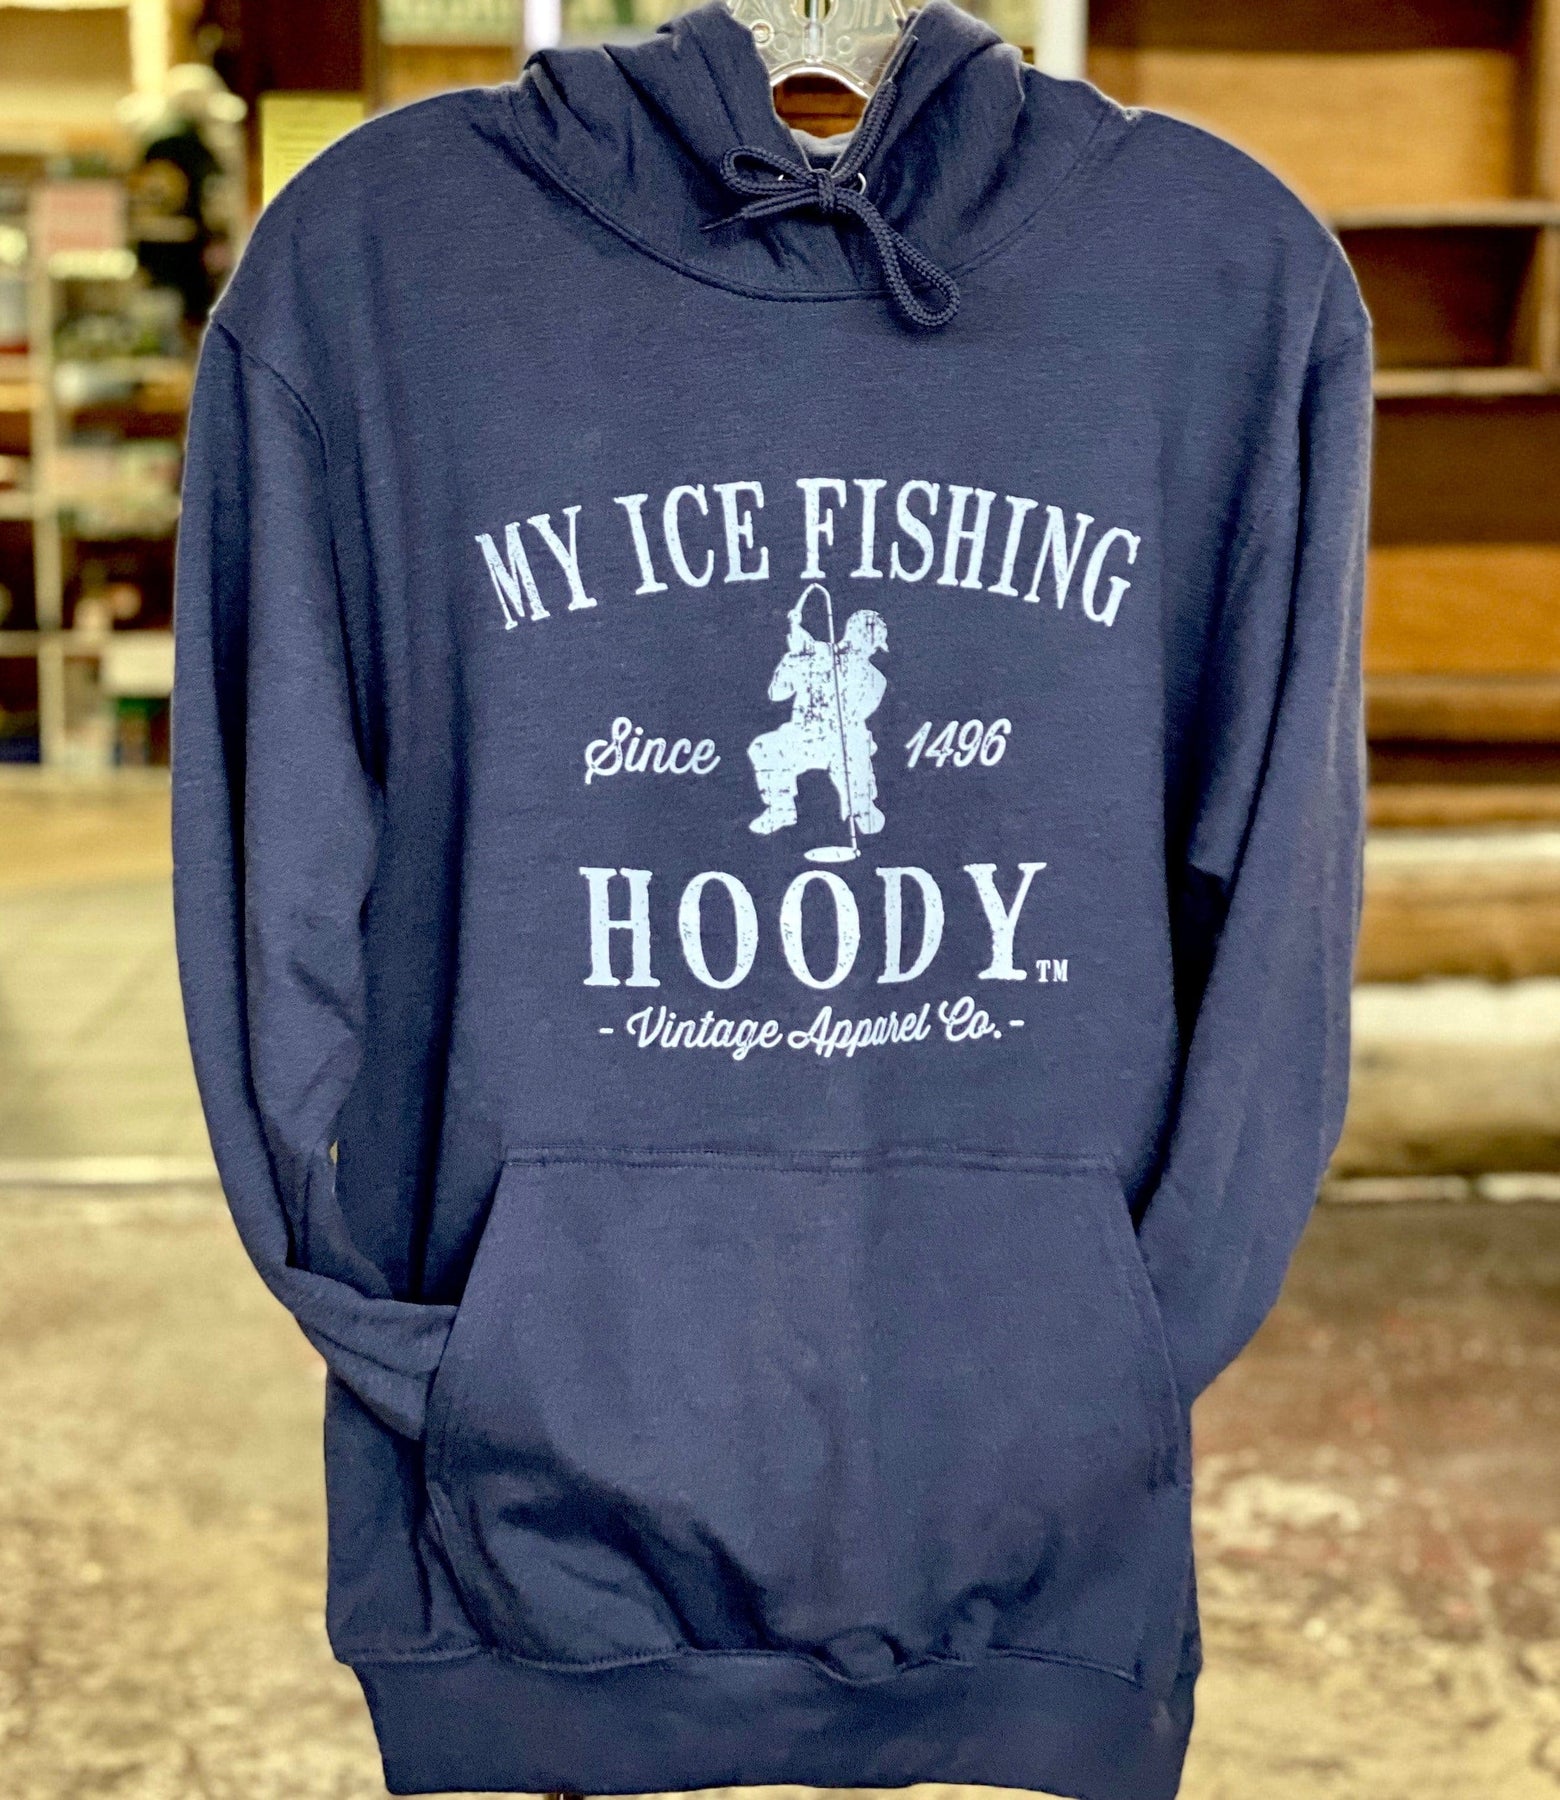 My Ice Fishing Hoody – The Muskoka Store